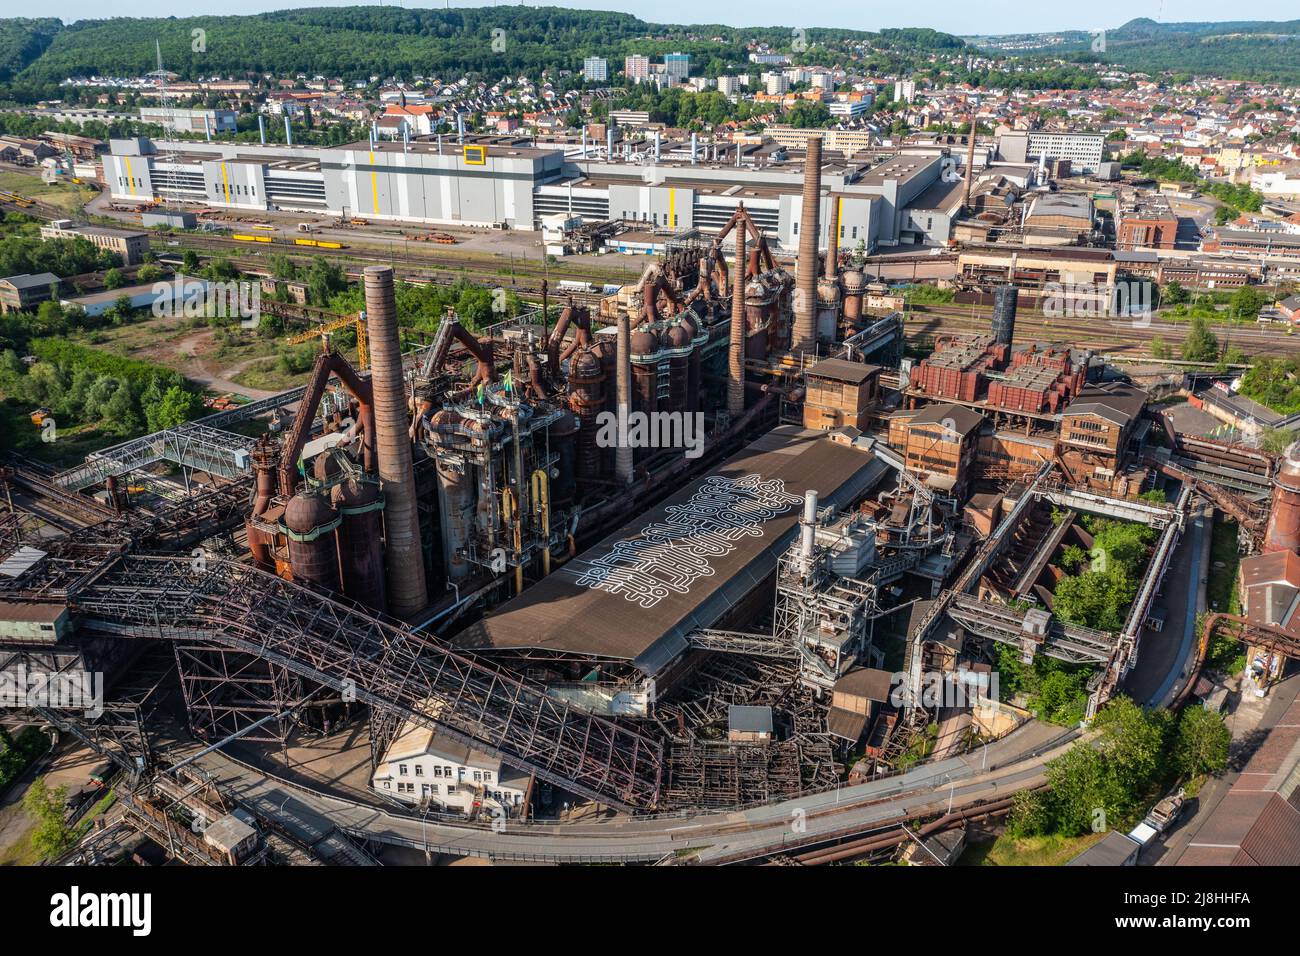 https://c8.alamy.com/comp/2J8HHFA/vlklingen-ironworks-or-weltkulturerbe-vlklinger-htte-historic-iron-works-vlklingen-germany-2J8HHFA.jpg